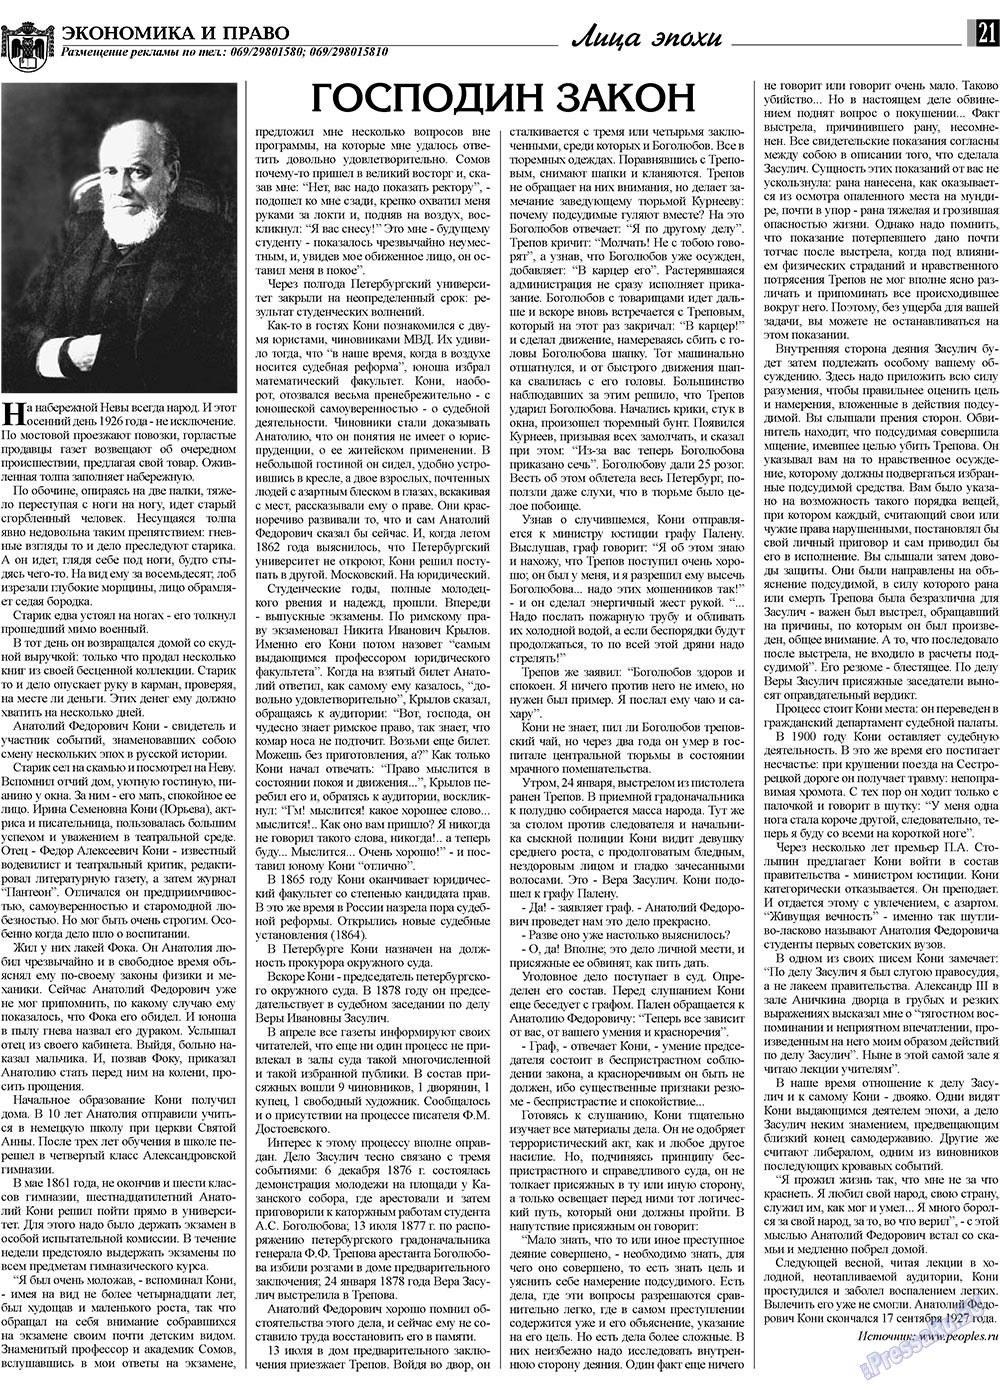 Экономика и право, газета. 2009 №10 стр.21